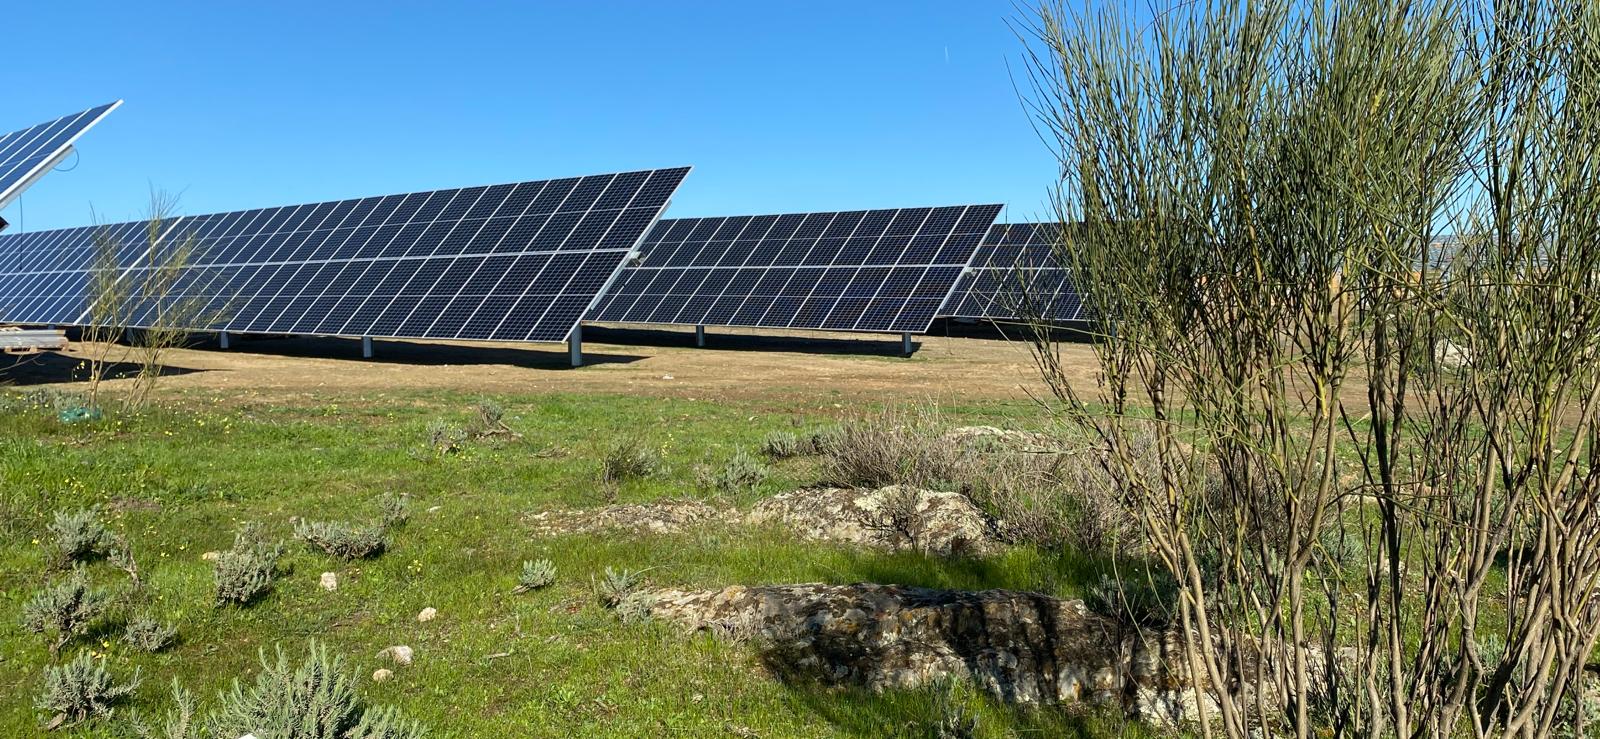 Proyecto fotovoltaico junto a vegetación